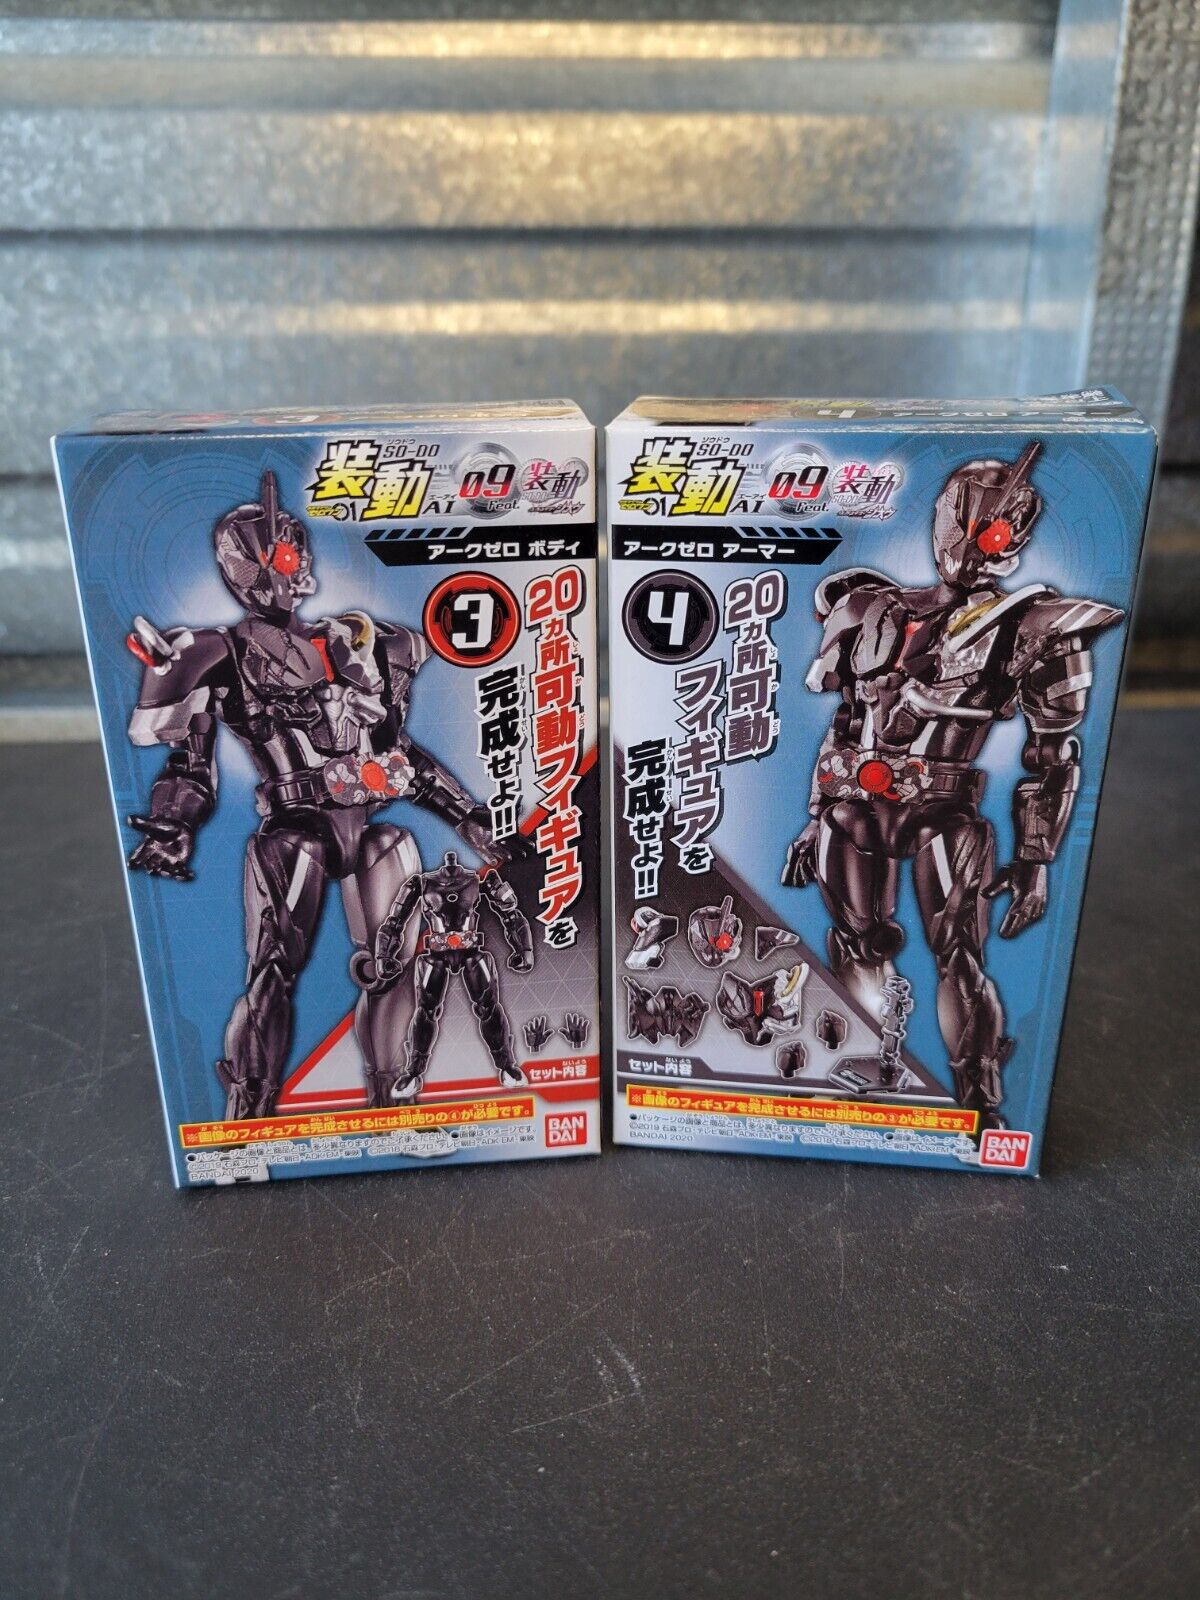 SO-DO Kamen Rider Zero One Ark Zero Figure Masked Rider Bandai AI 09 Sodo